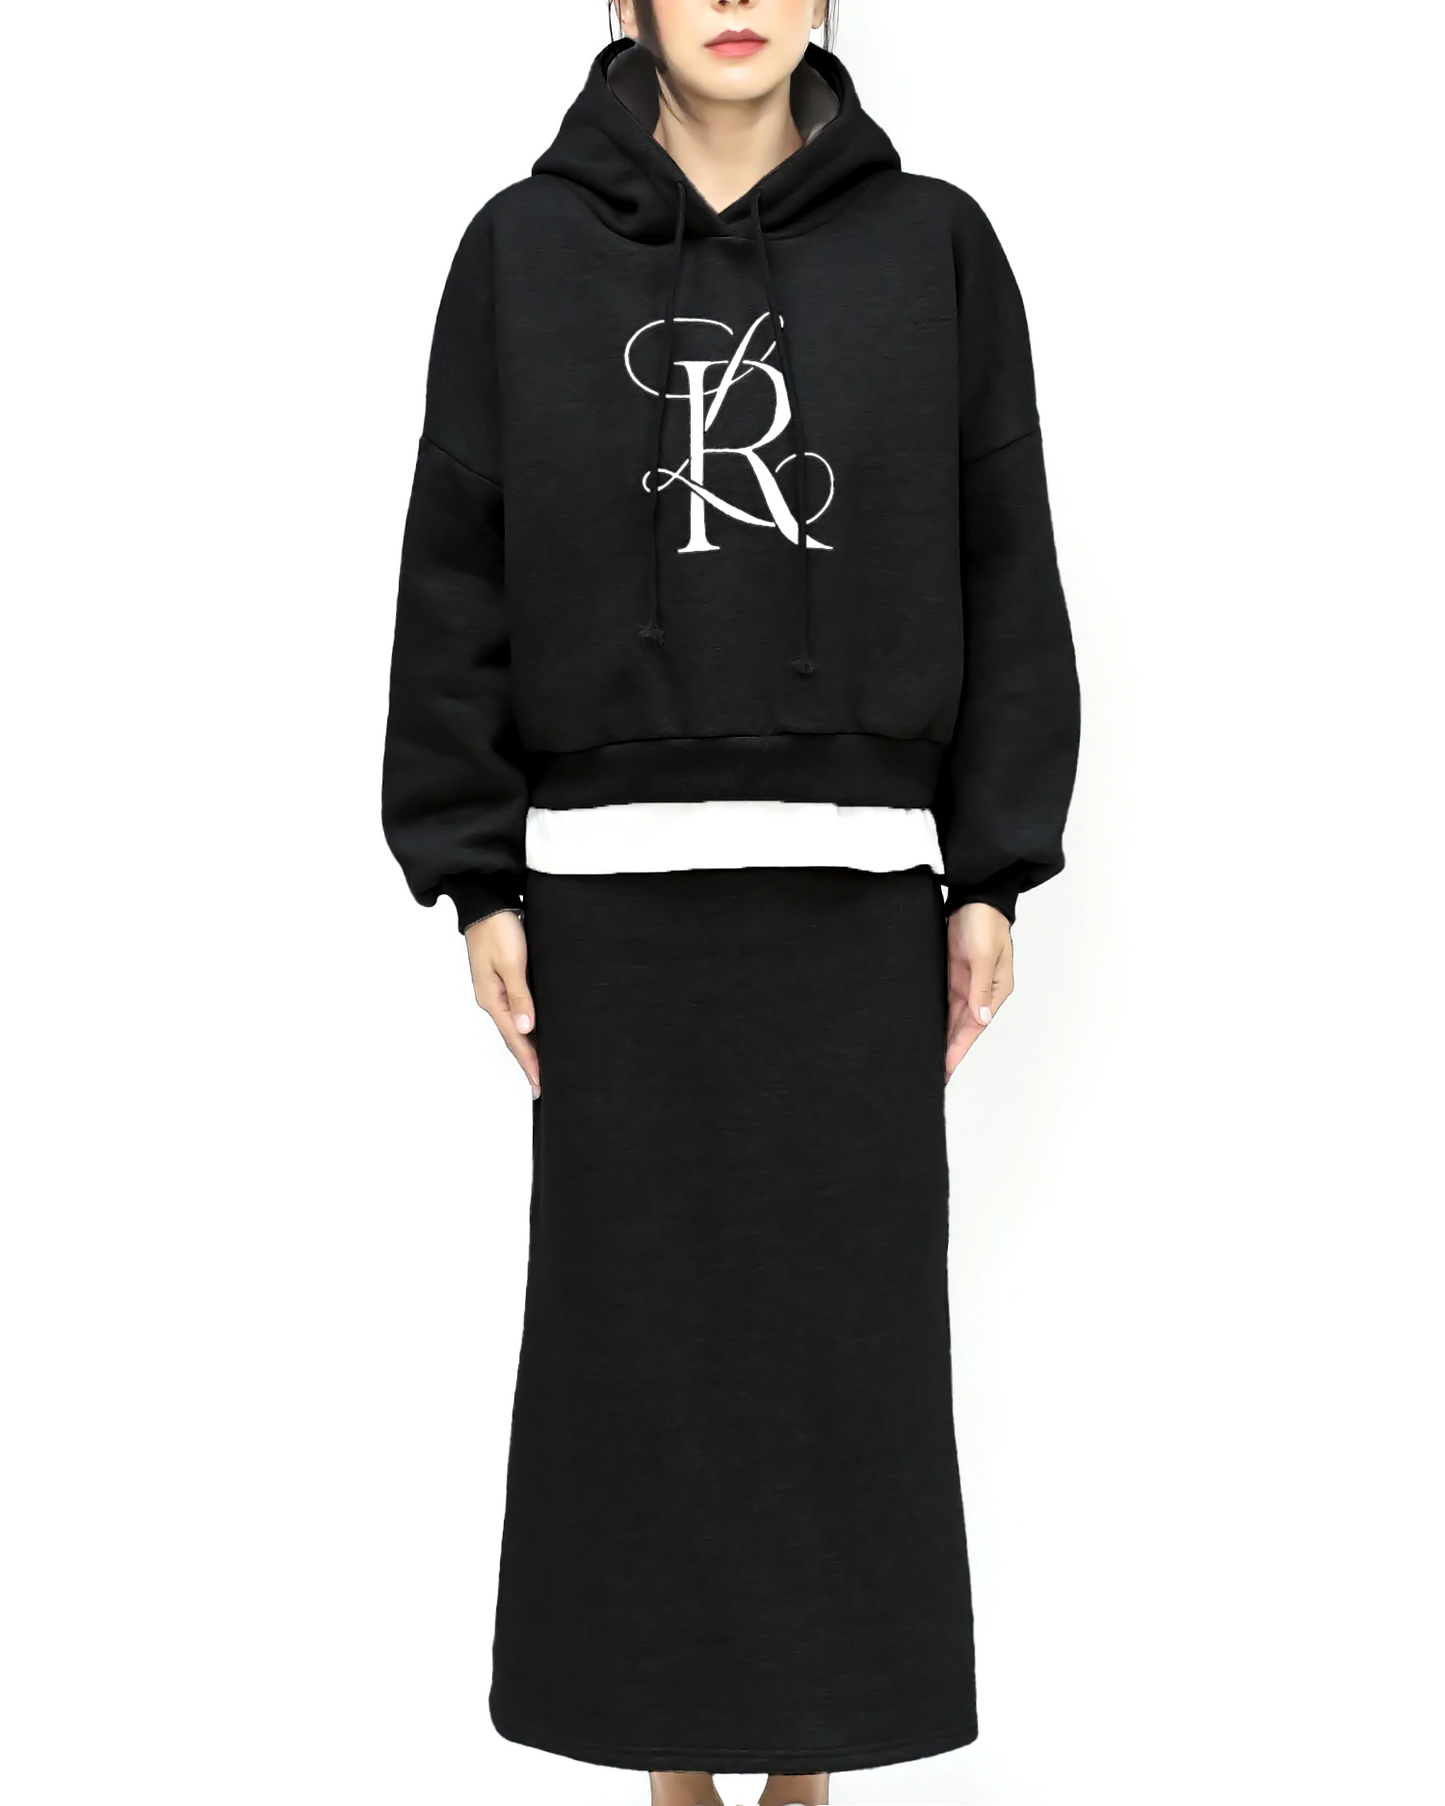 black embellished hoodie soft sweatshirt & skirt set *pre-order*